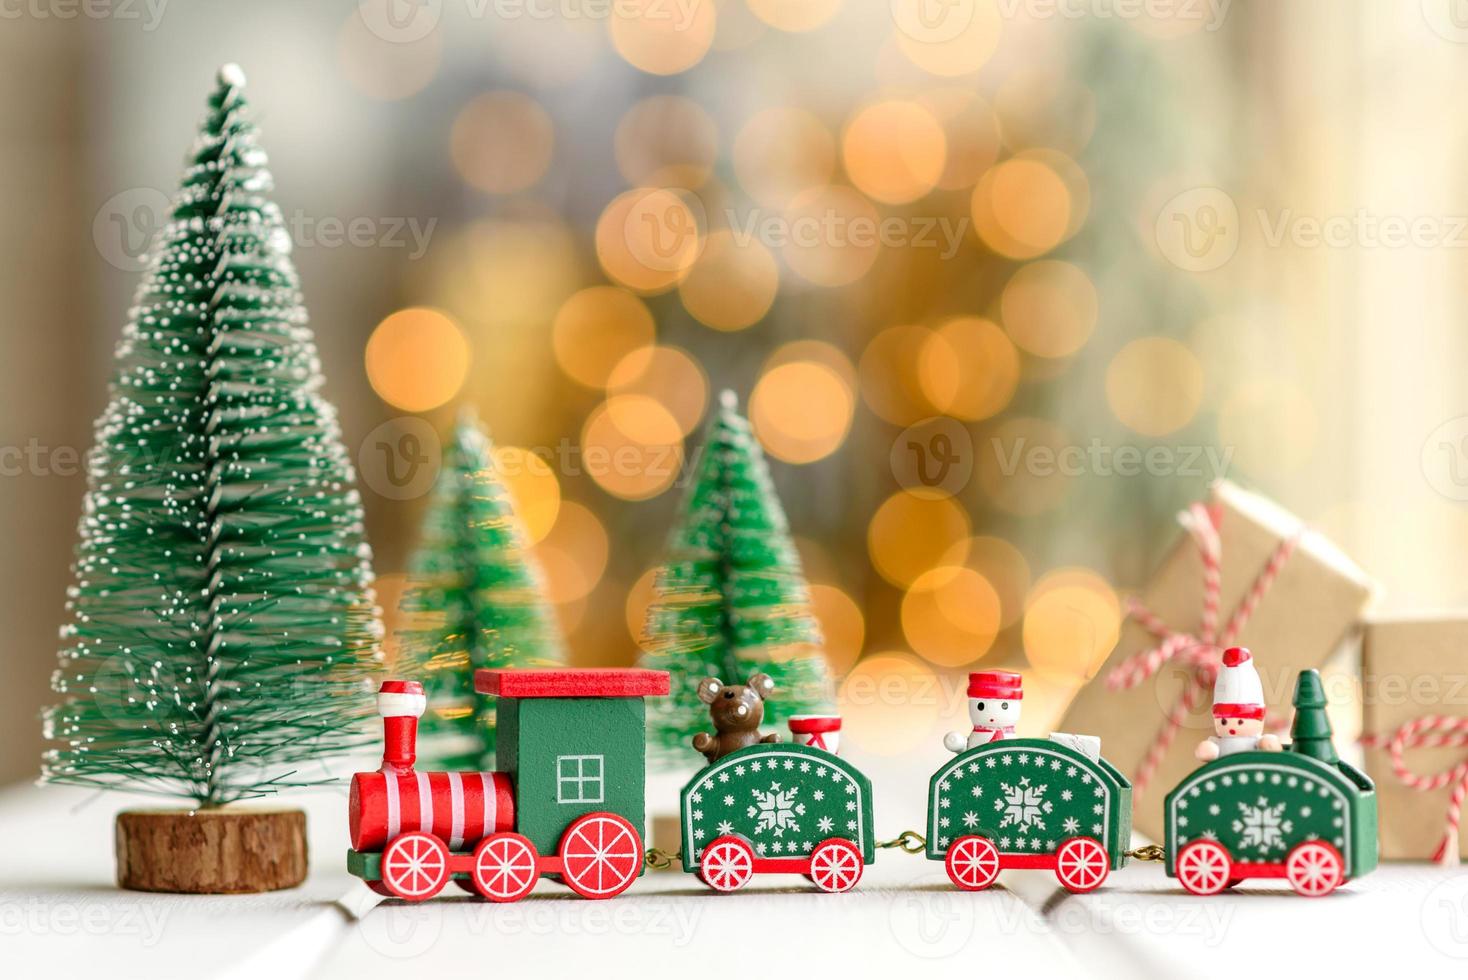 röda och gröna element som används för att dekorera julgranen foto